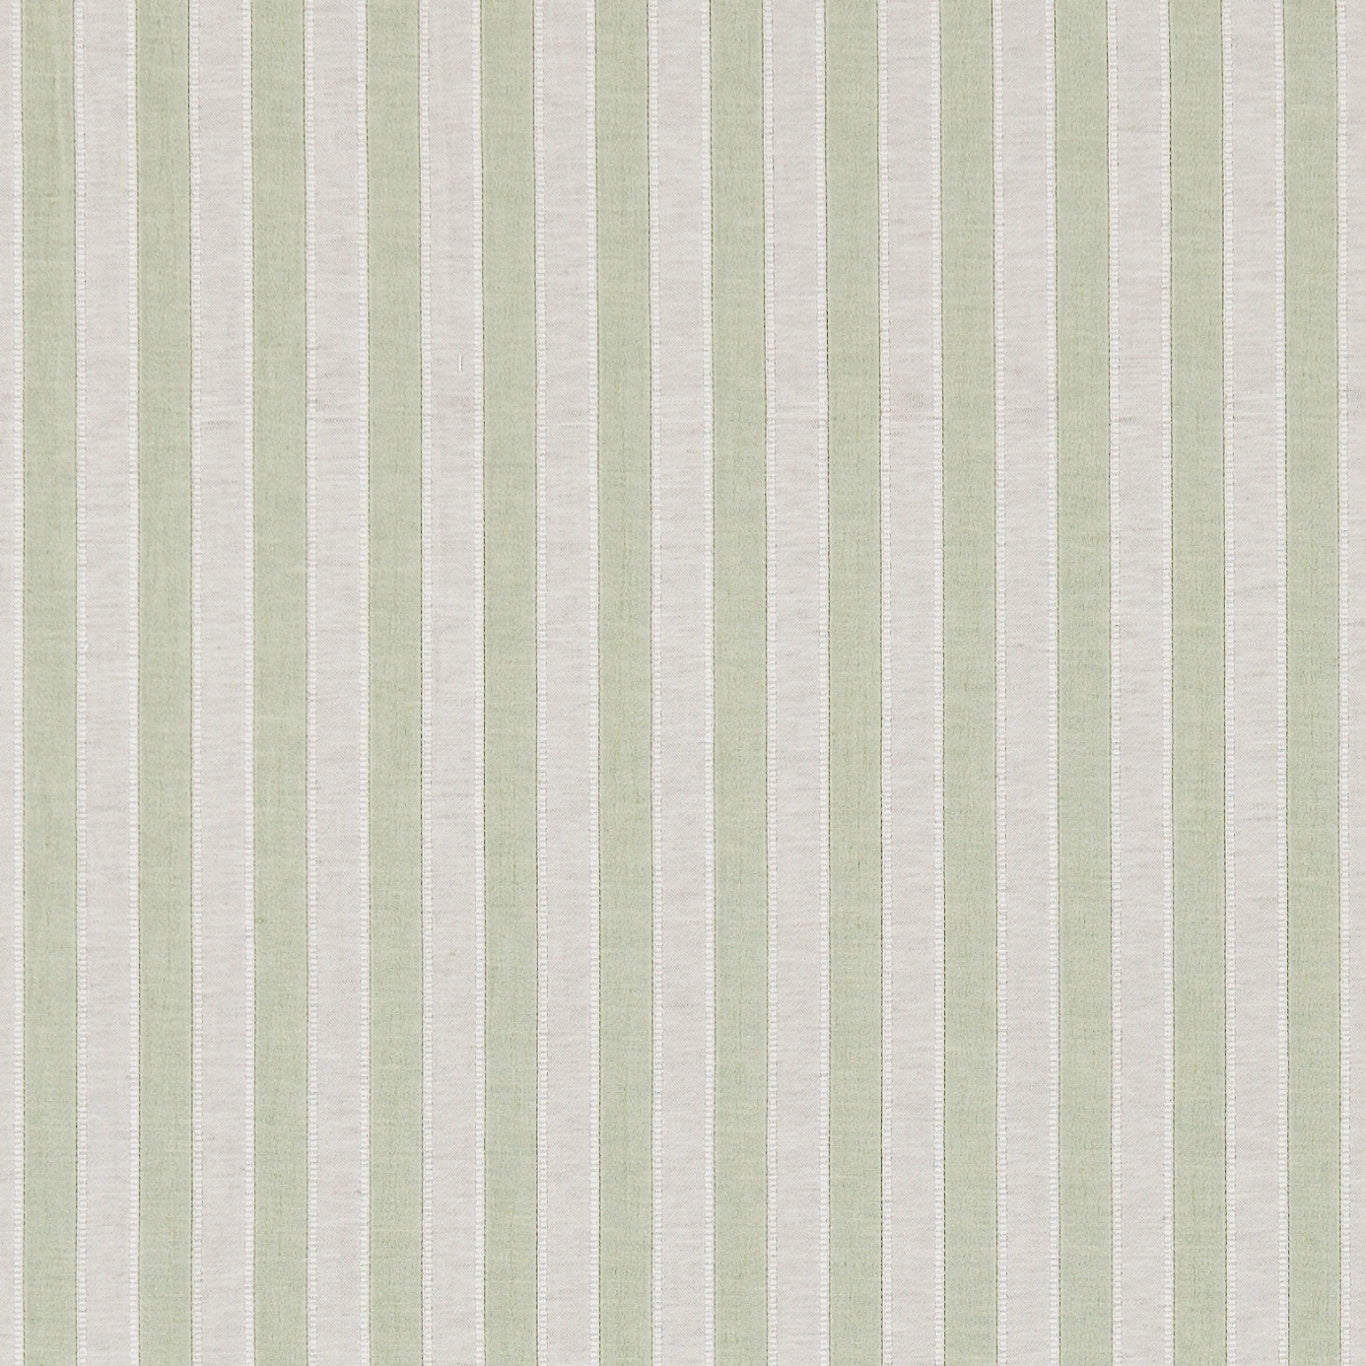 Sorilla Stripe Apple/Linen Fabric By Sanderson